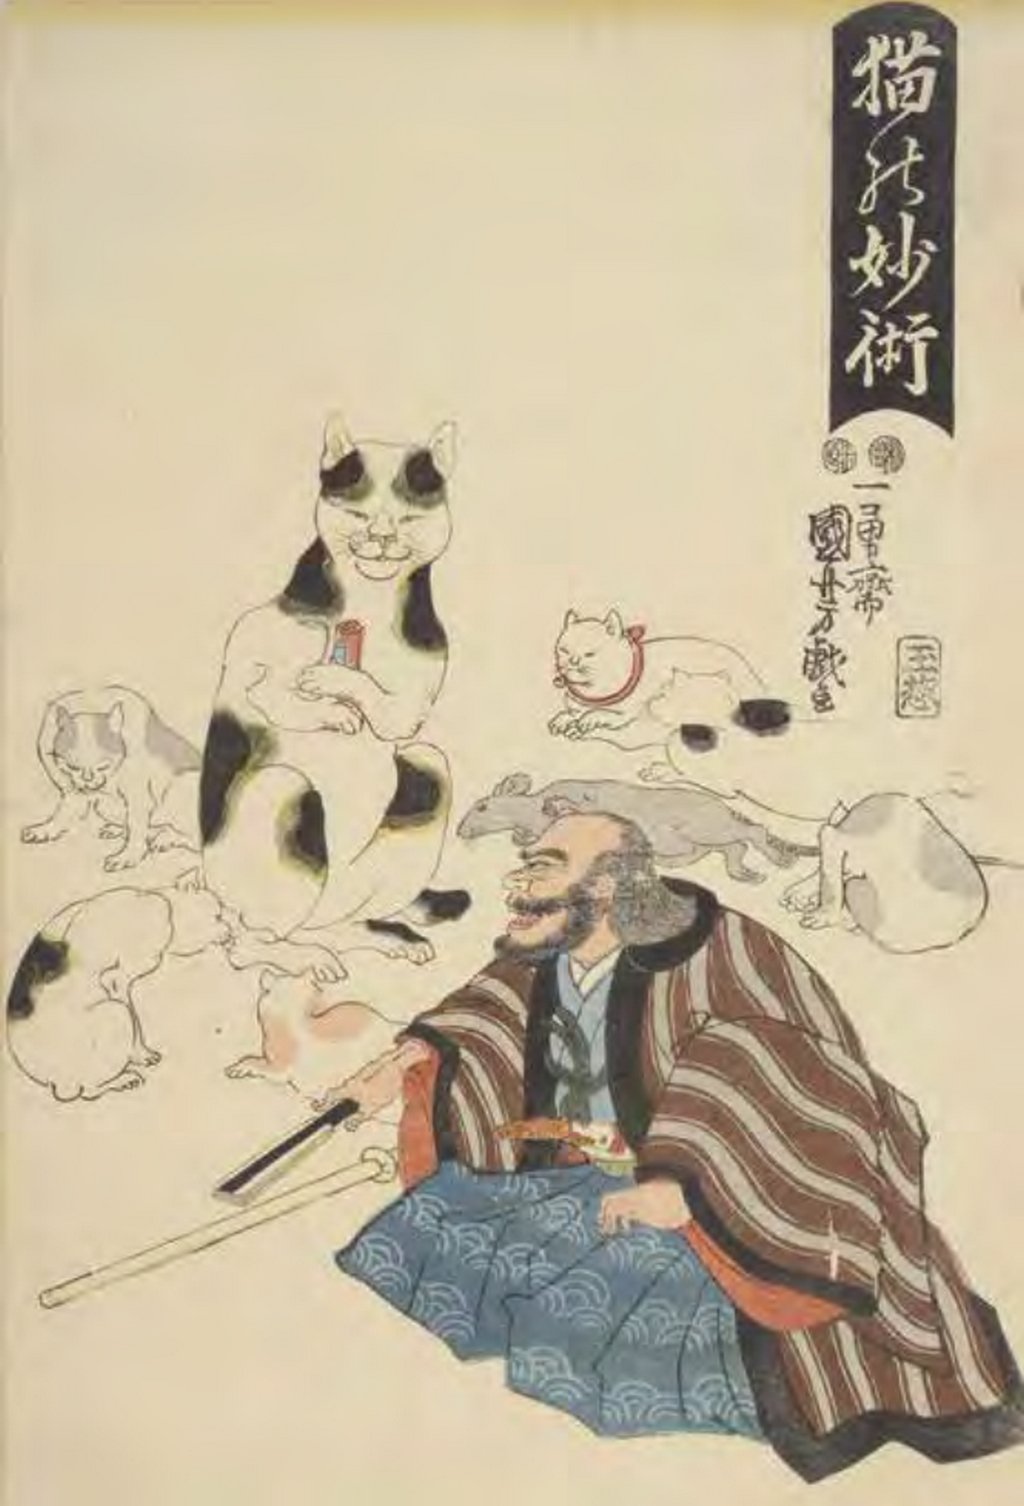 Les merveilleuses techniques du vieux chat, Kuniyoshi